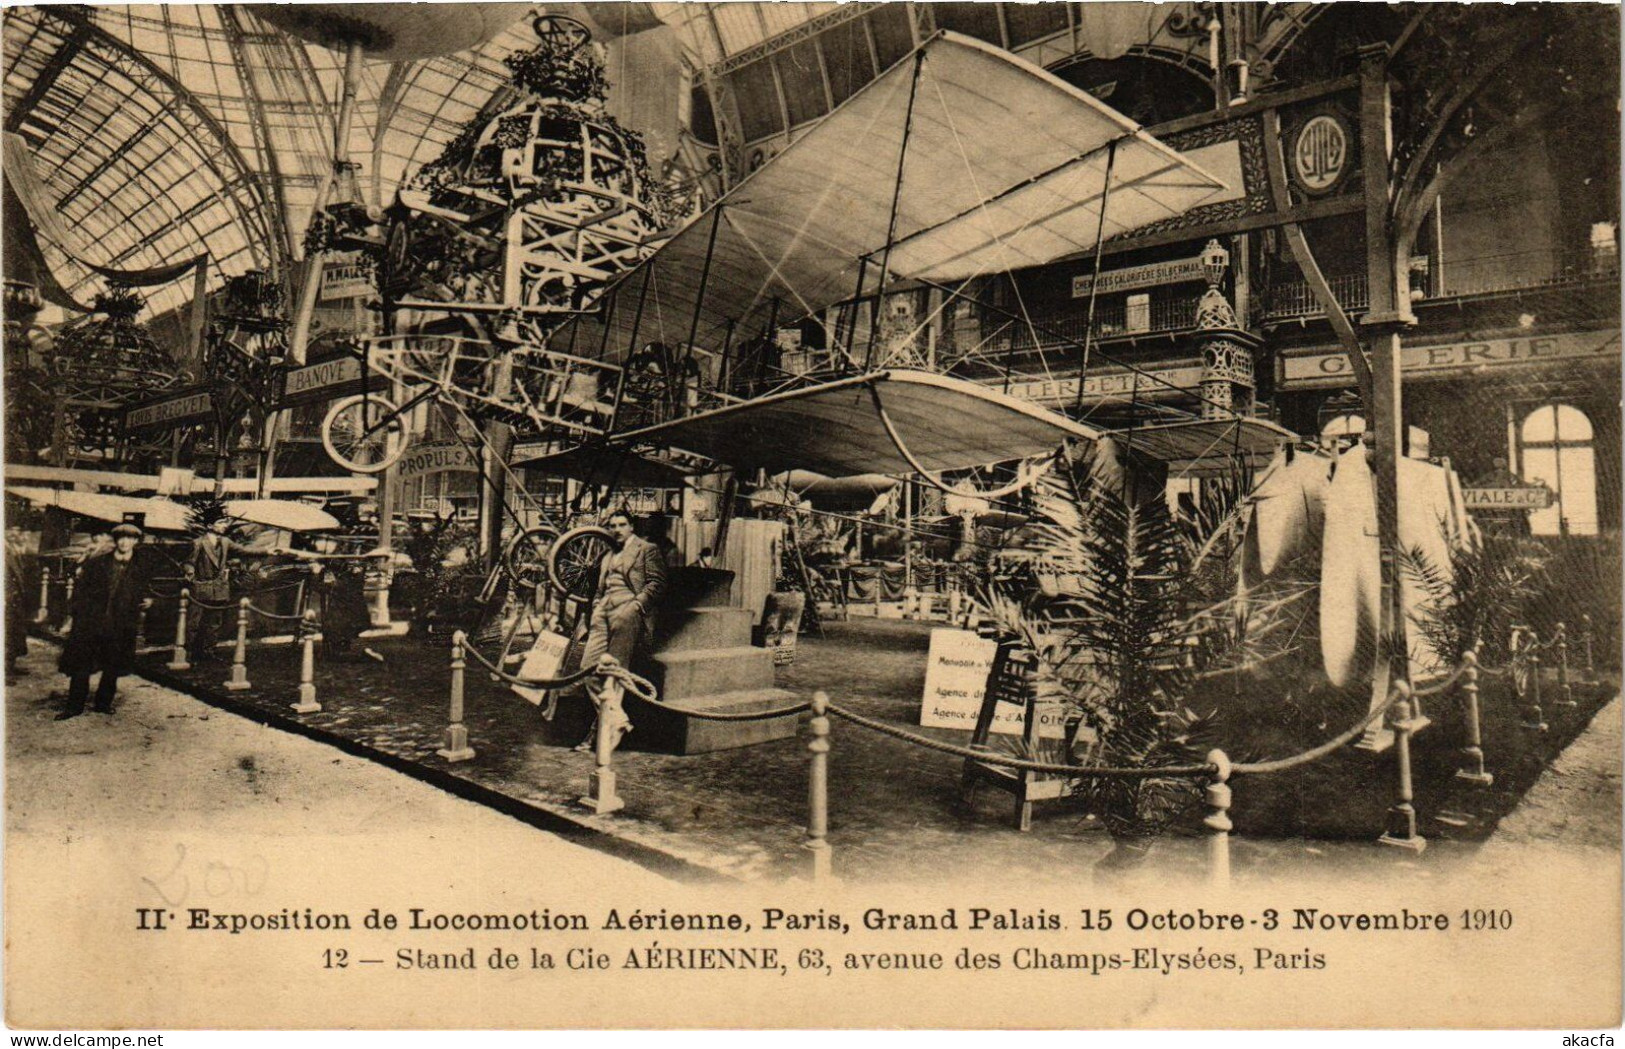 PC AVIATION EXPO DE LOCOMOTION AERIENNE 1910 PARIS STAND CIE AÉRIENNE (a53925) - Fliegertreffen